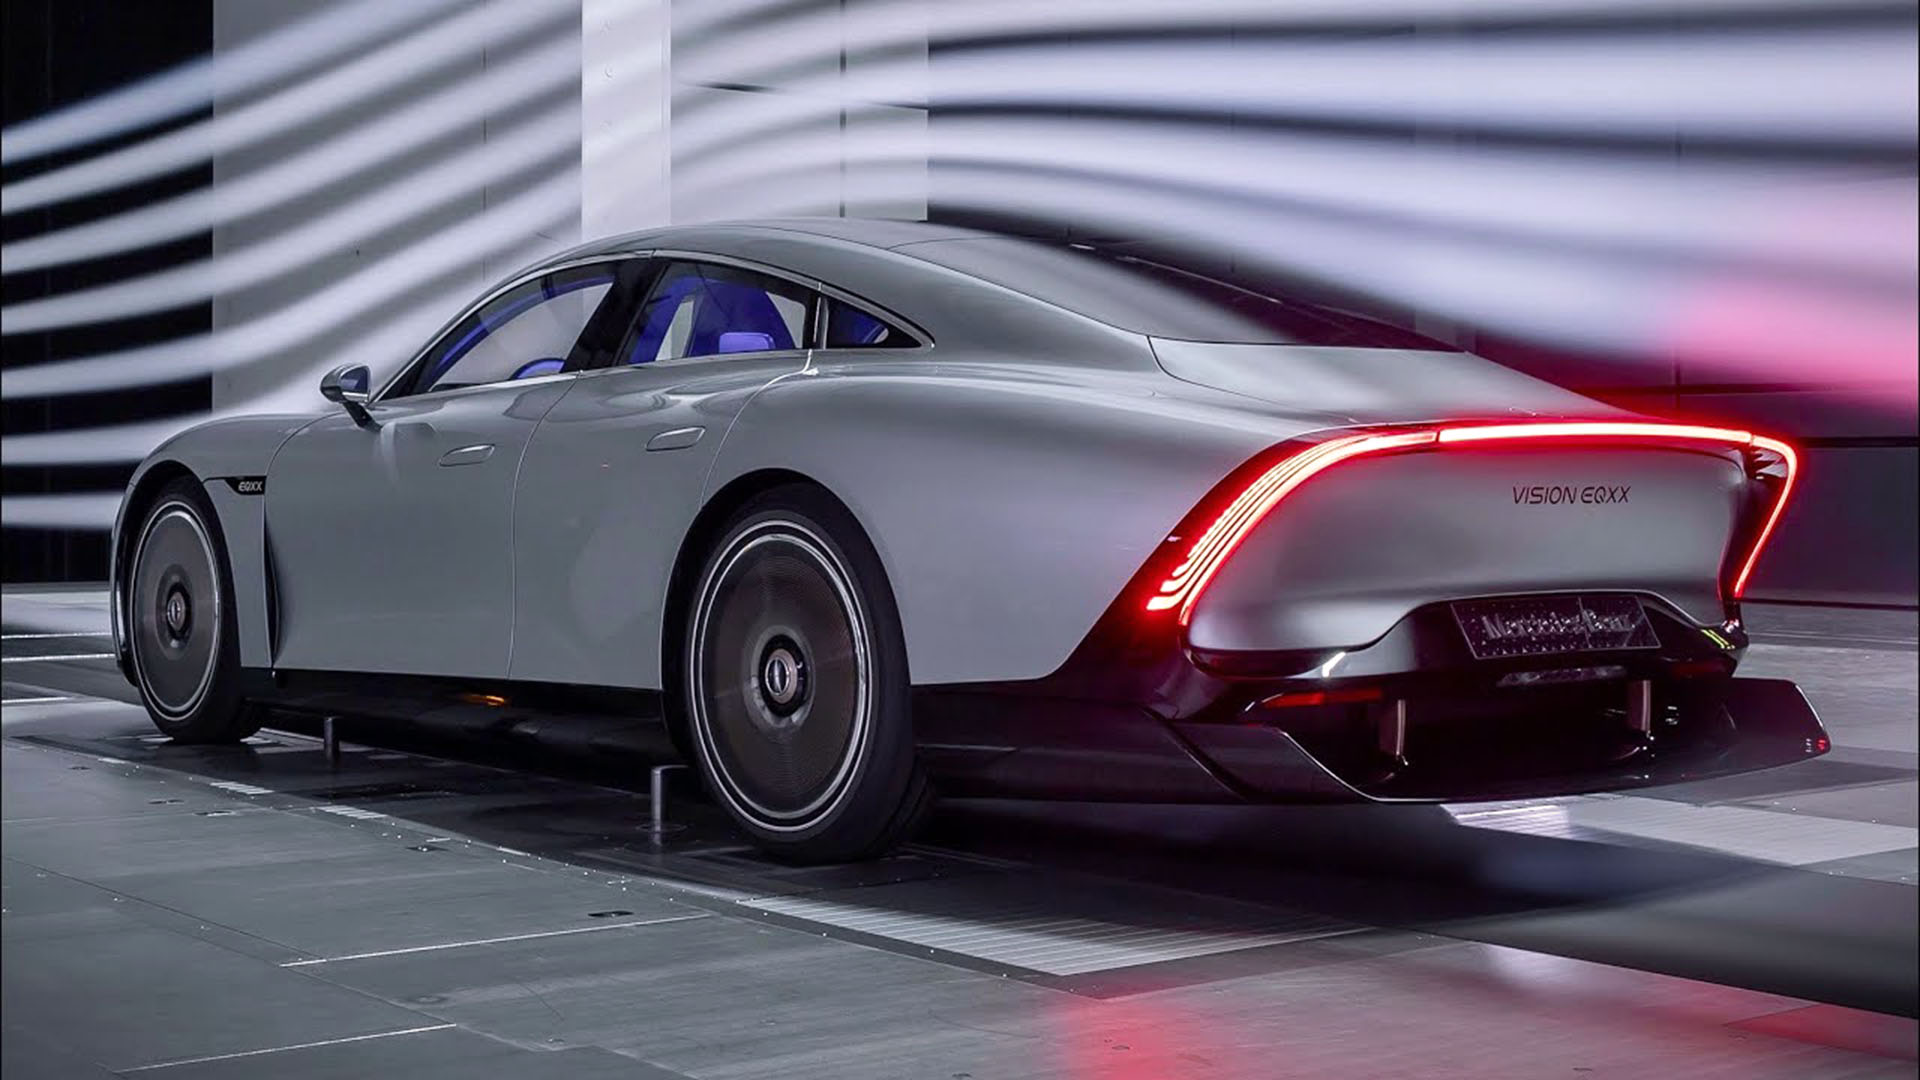 El prototipo eléctrico de Mercedes, el Vision EQXX, es apenas superior al Lightyear 0, pero no es un auto de producción sino un concept car